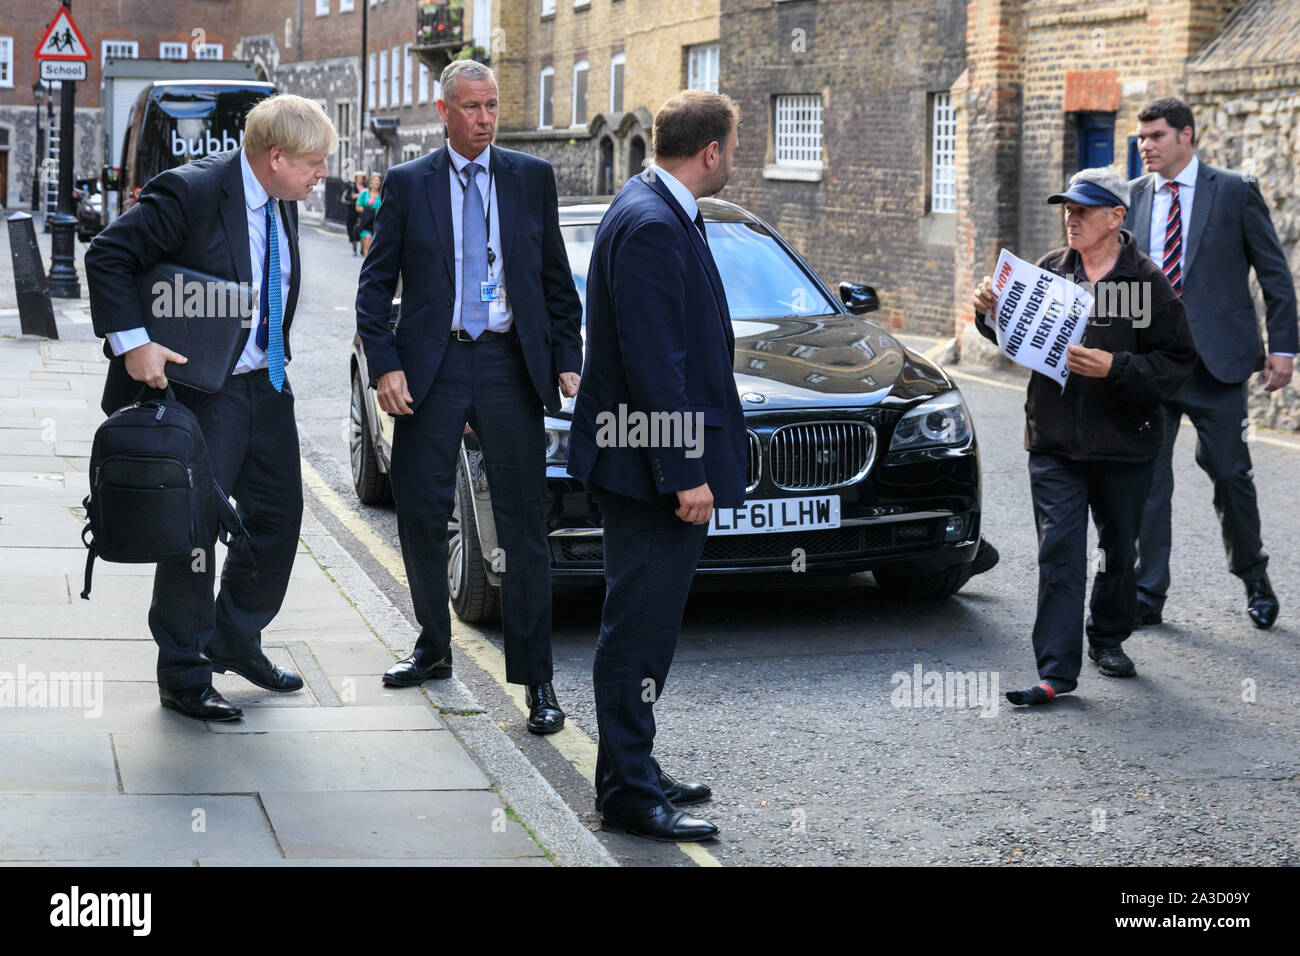 Boris Johnson rencontre un manifestant au cours de sa campagne pour devenir premier ministre, Westminster, Londres Banque D'Images